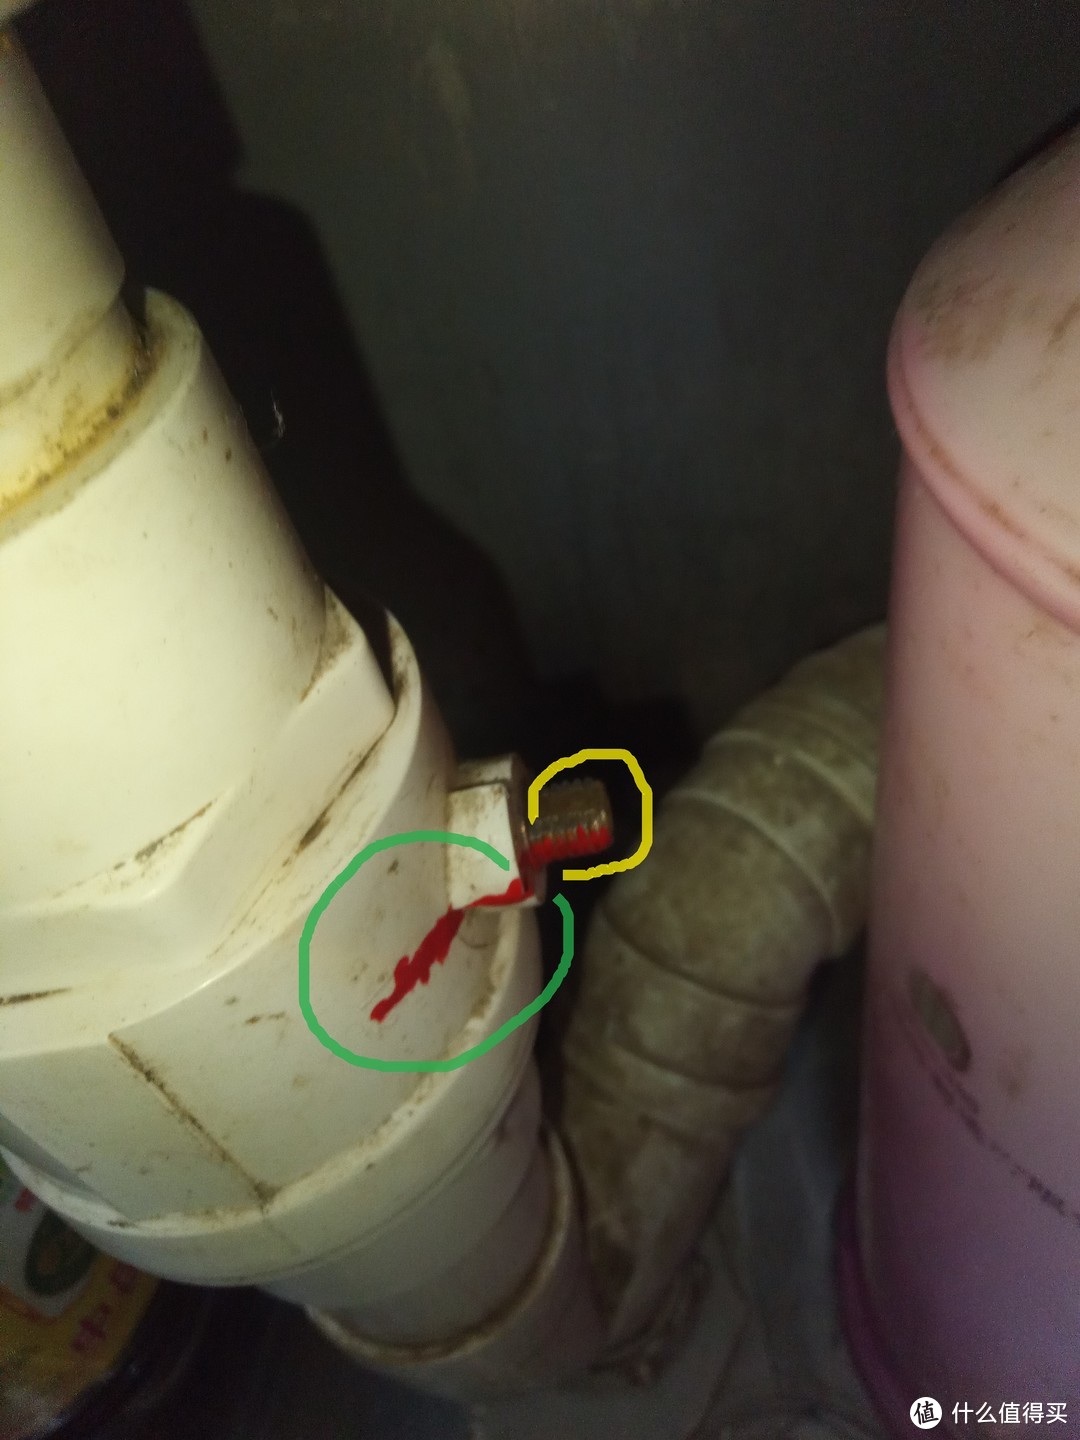 里面的塑料球阀（PVC）转到全封闭状态时，外面用红漆做一条mark，当两个圈里的红线成一直线时，里面的球阀铁定闭合（因为看过螺丝什么的并没有松动迹象），至于那个手柄，就不装了，用的时候拿出来扳一下